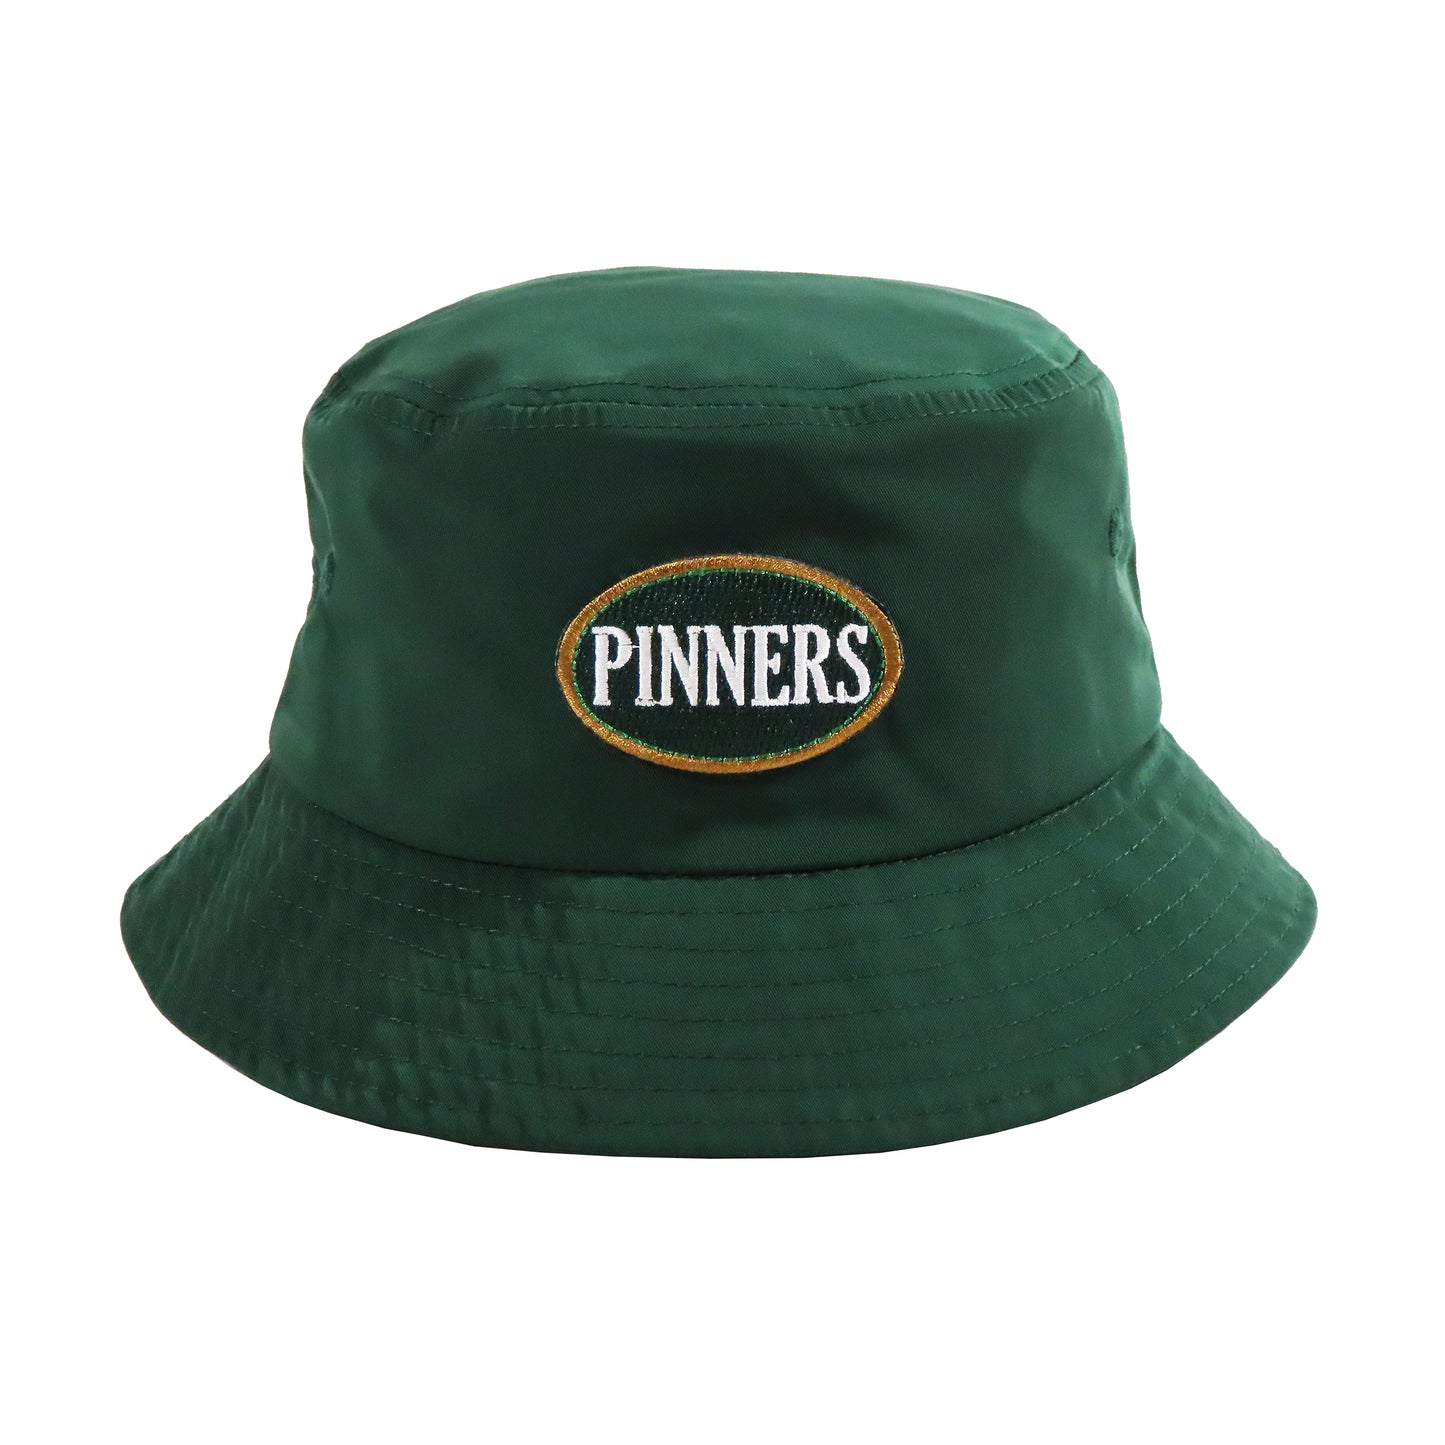 Pinner's Golf - OG Oval Patch Nylon Bucket Hat (Pinner's Green)